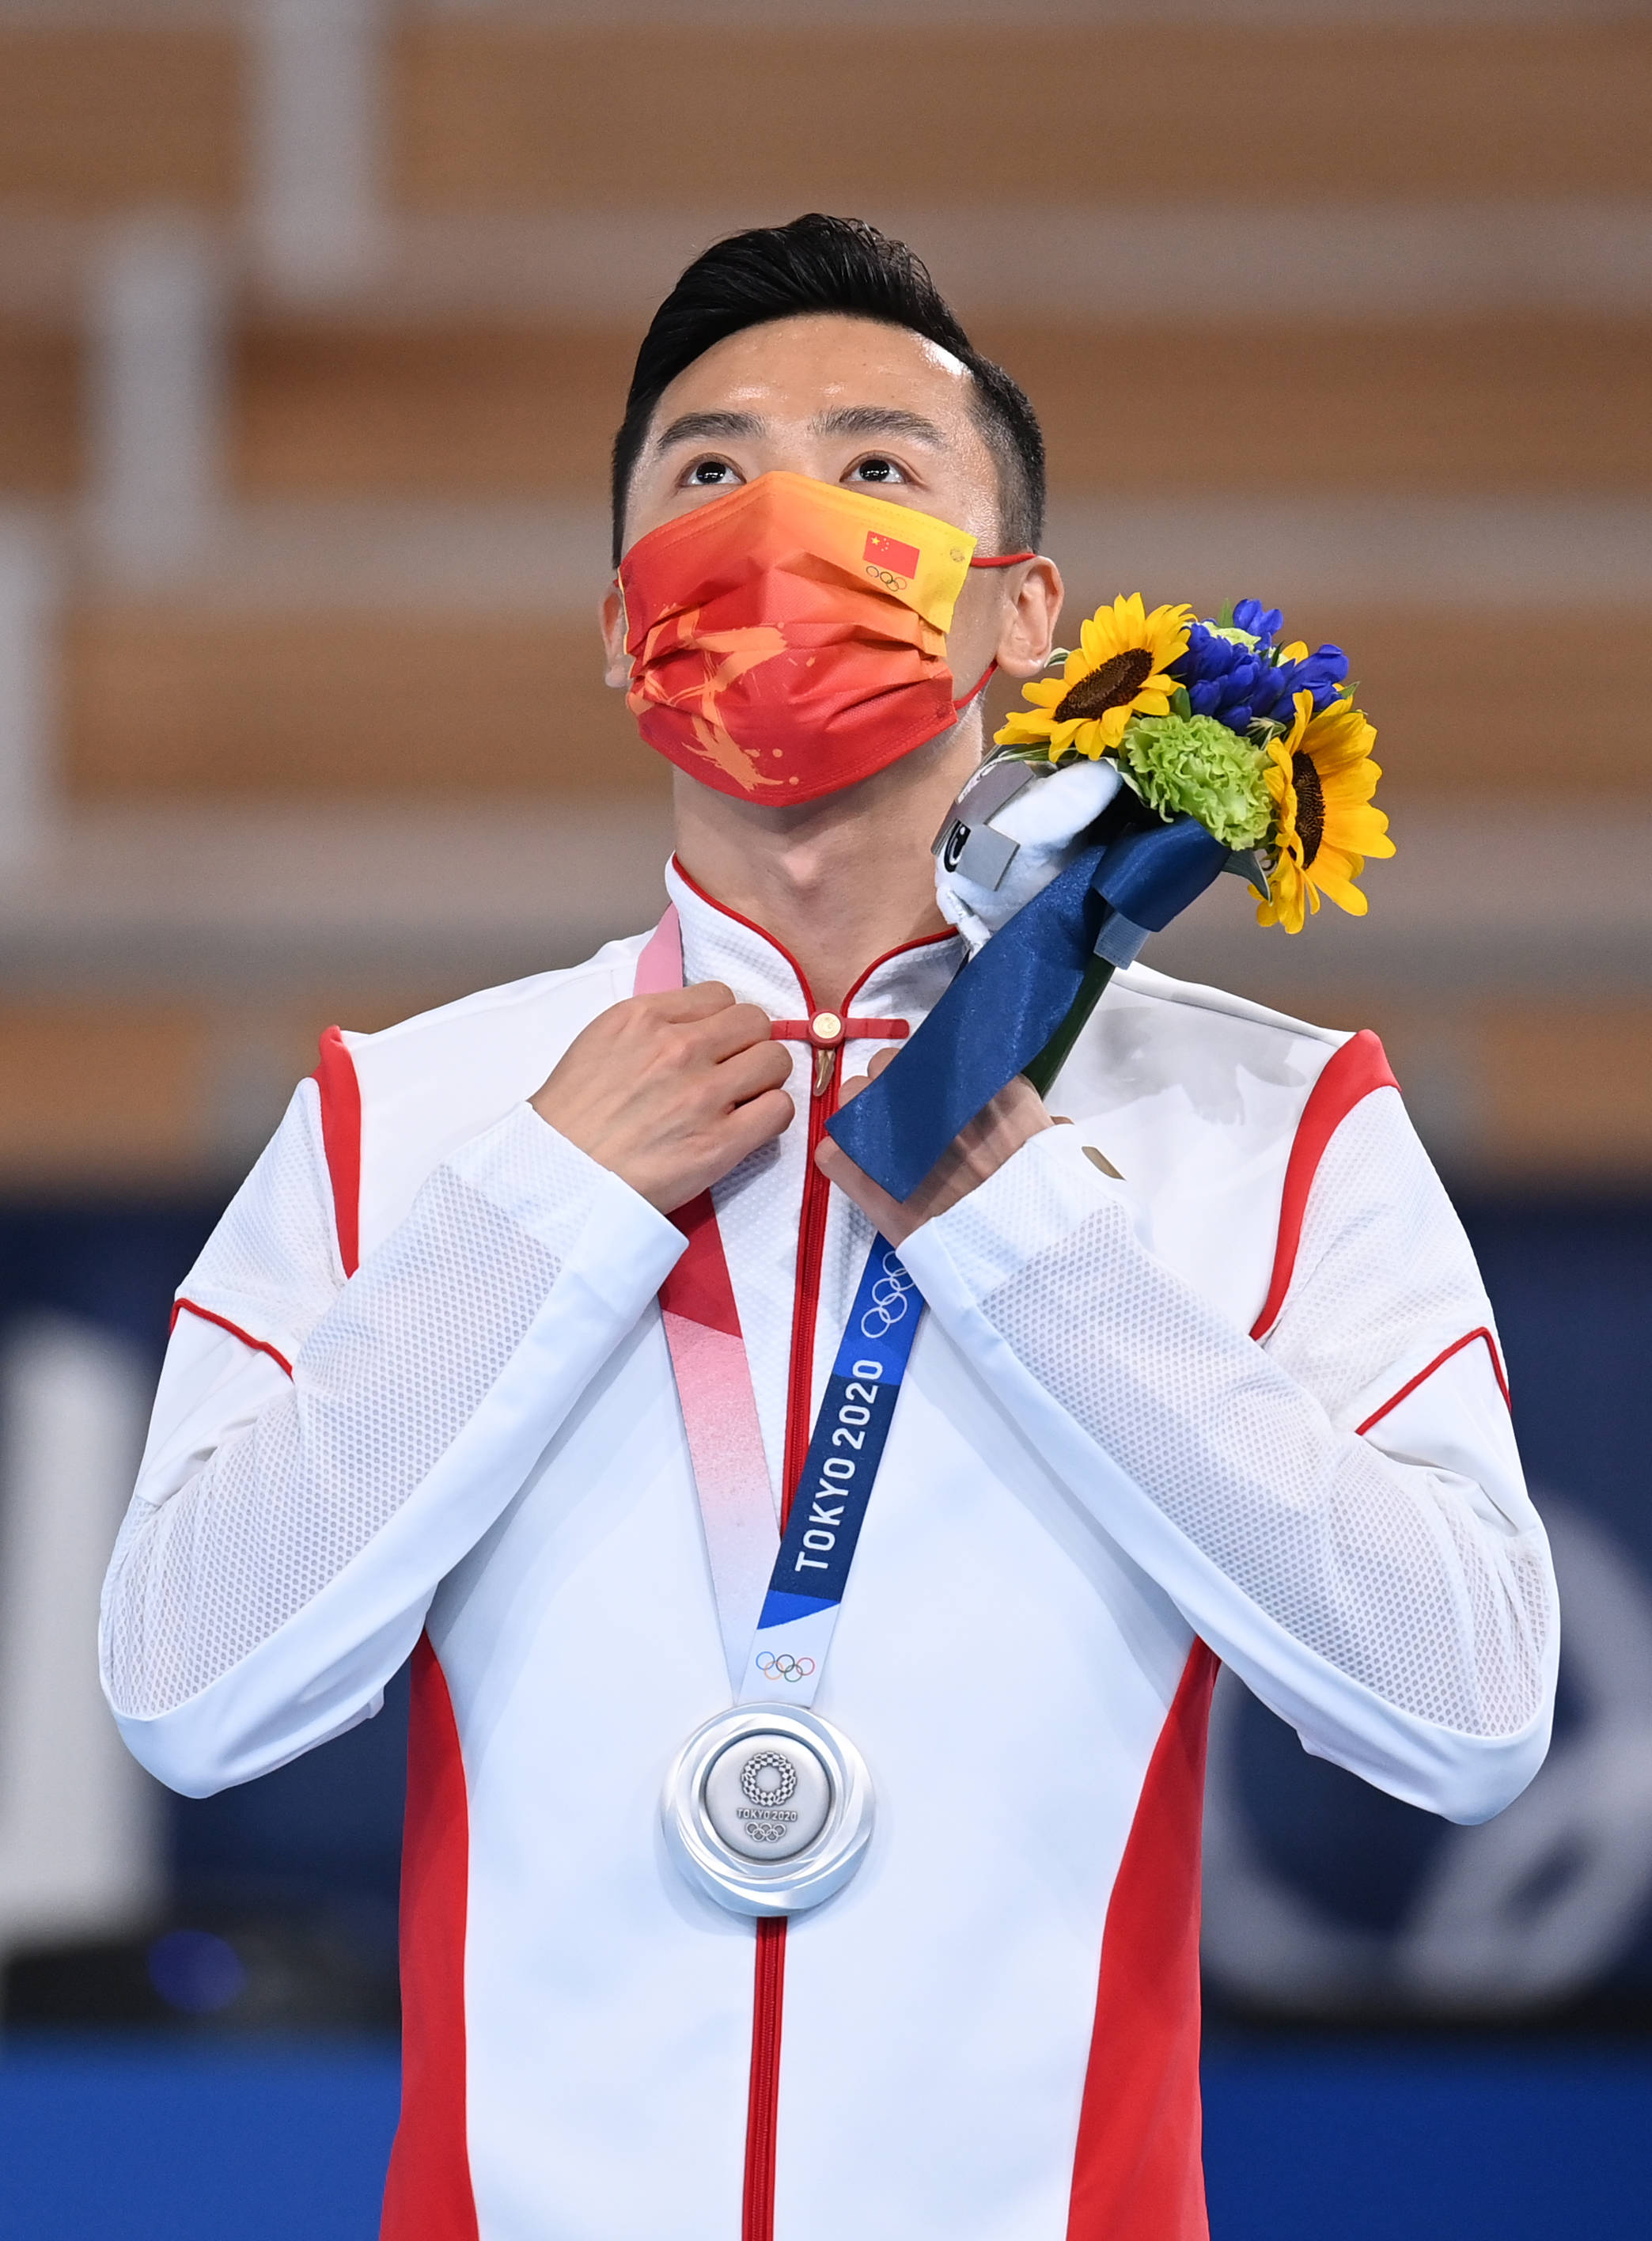 程敏 摄当日,在东京奥运会蹦床项目男子决赛中,中国选手董栋获得亚军